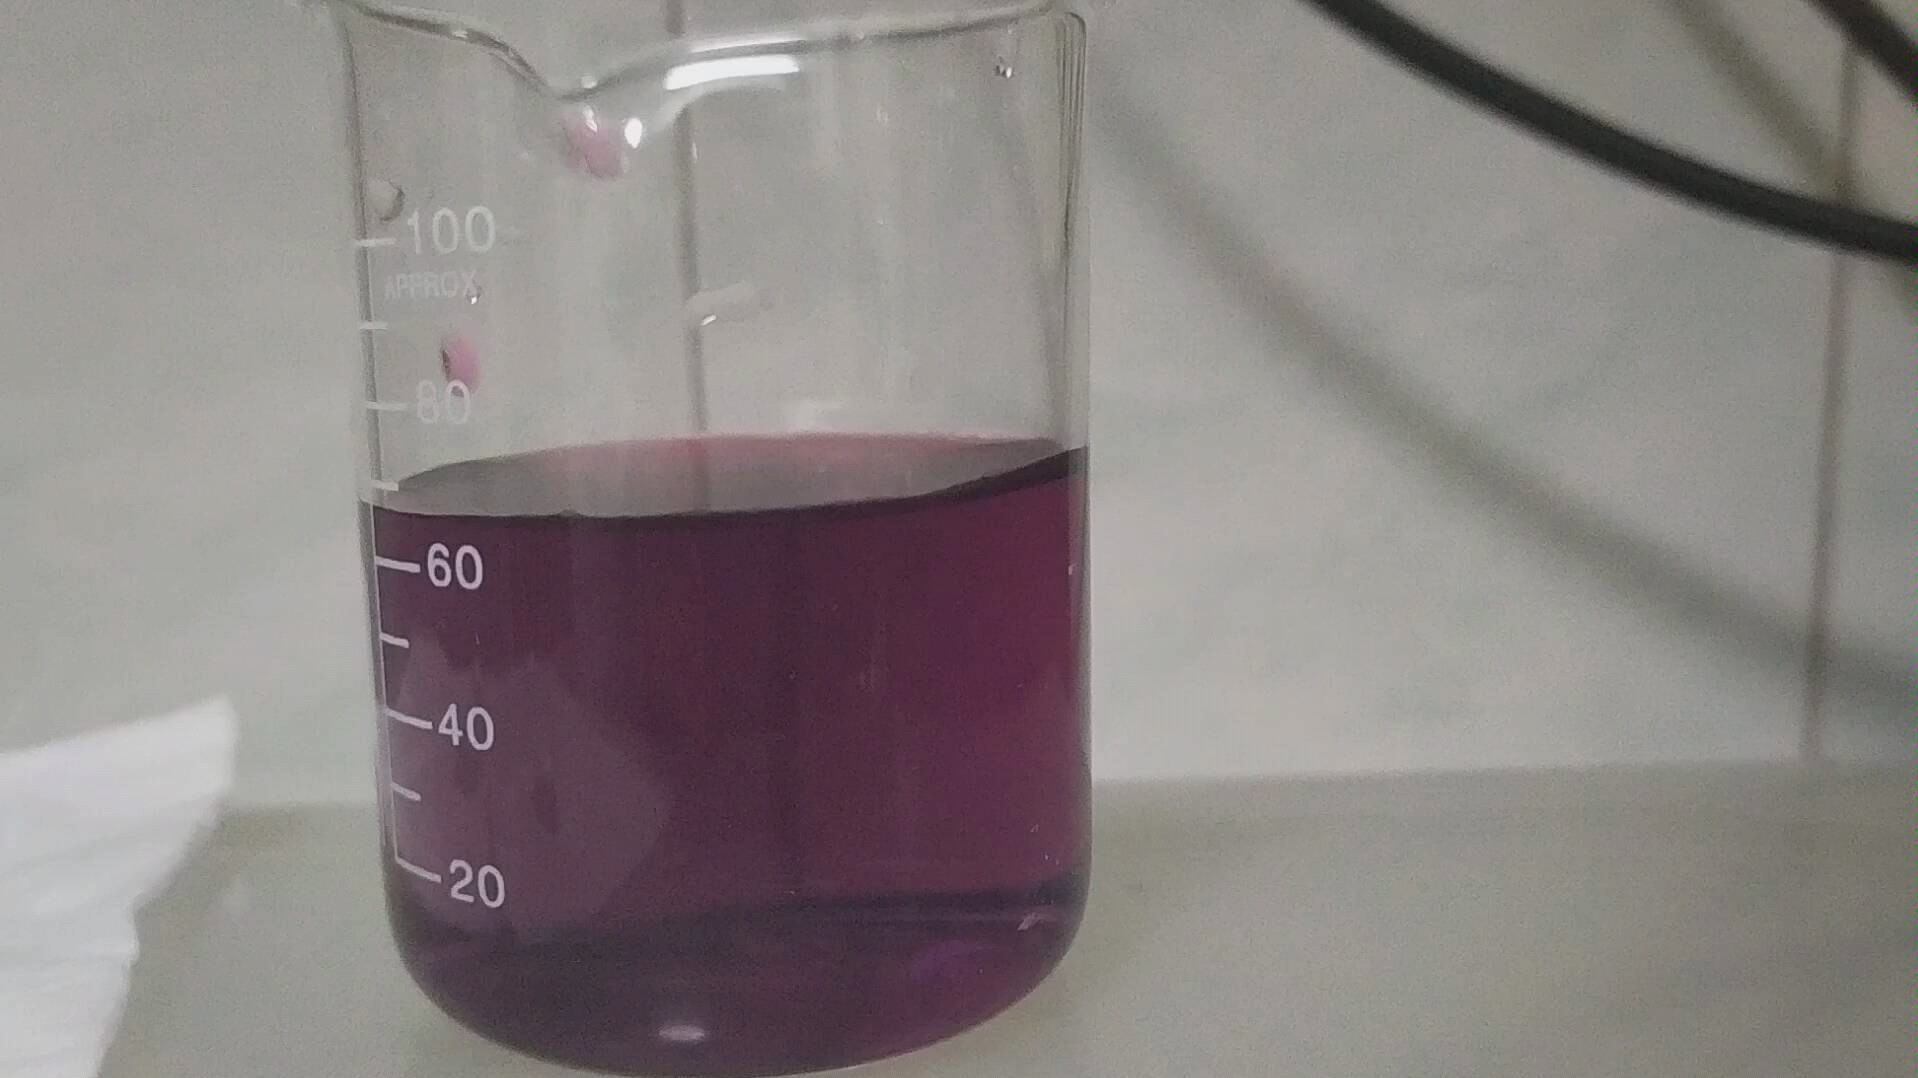 高锰酸钾稀释后的颜色图片